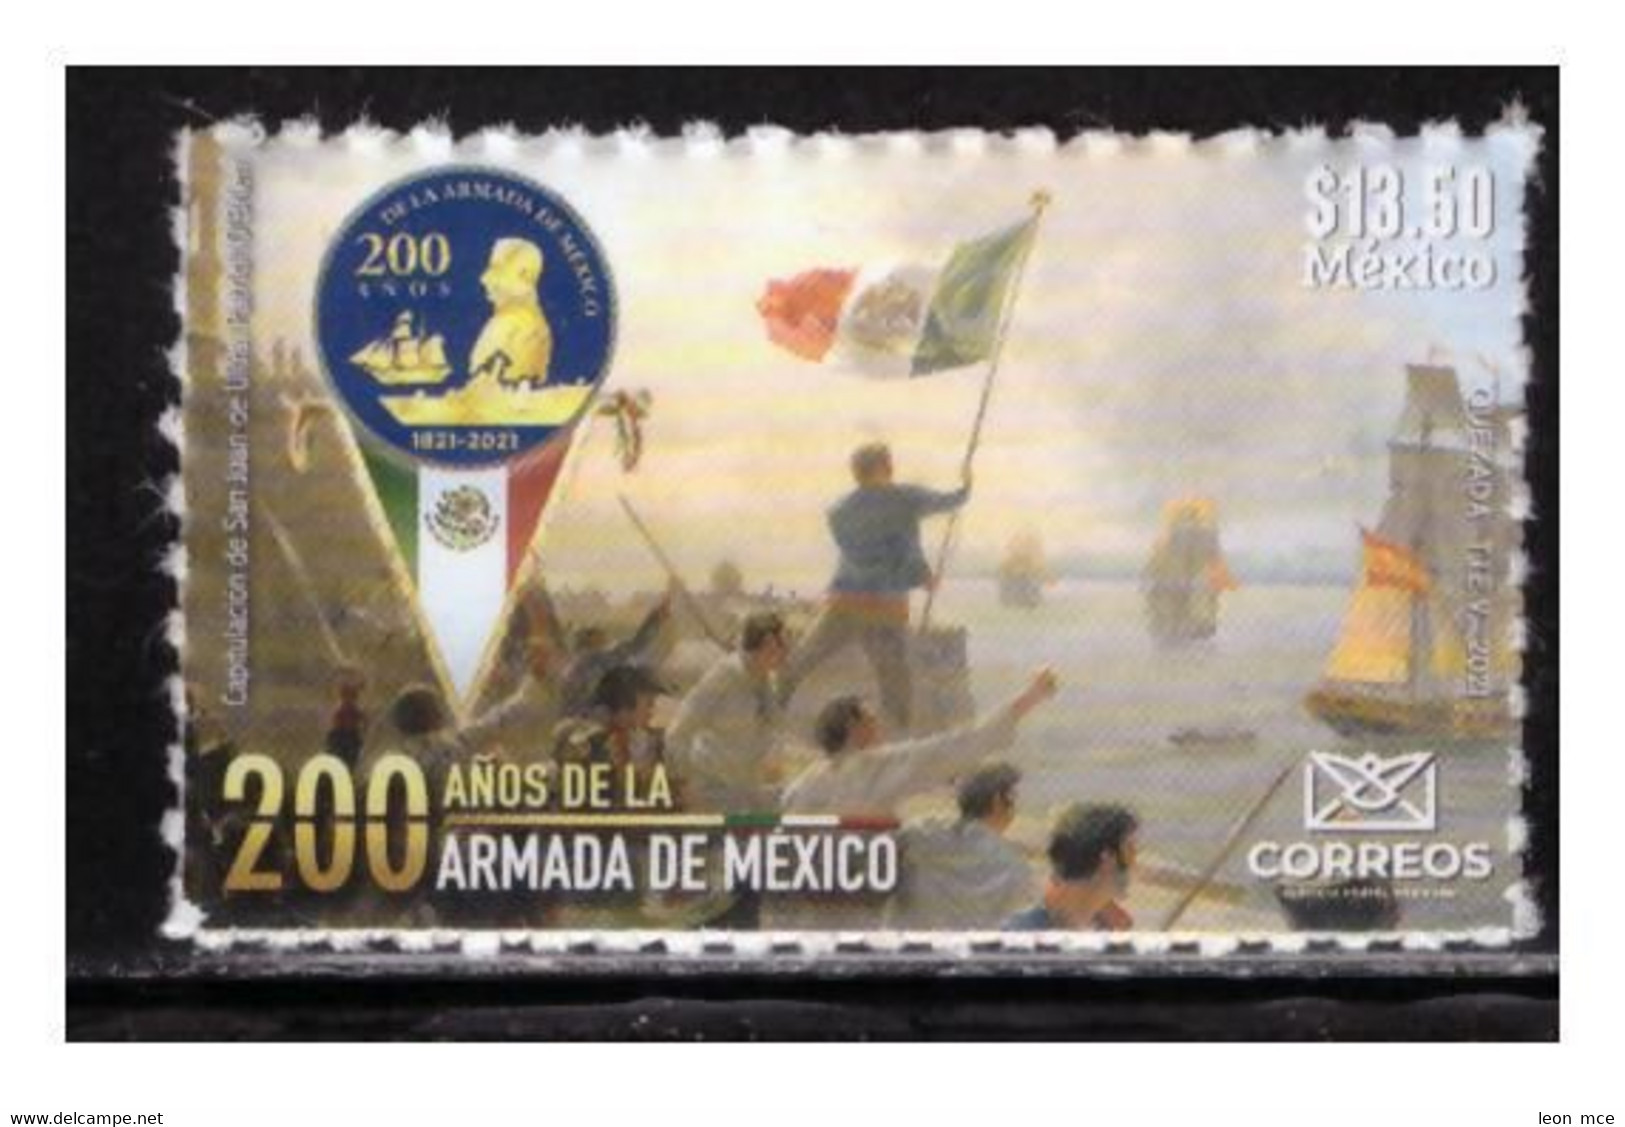 2021 MÉXICO 200 Años De La Armada De México MNH 200 Years Of The Mexican Navy  SELF-ADHERIBLE SEAL, FLAG, BOATS - Mexique